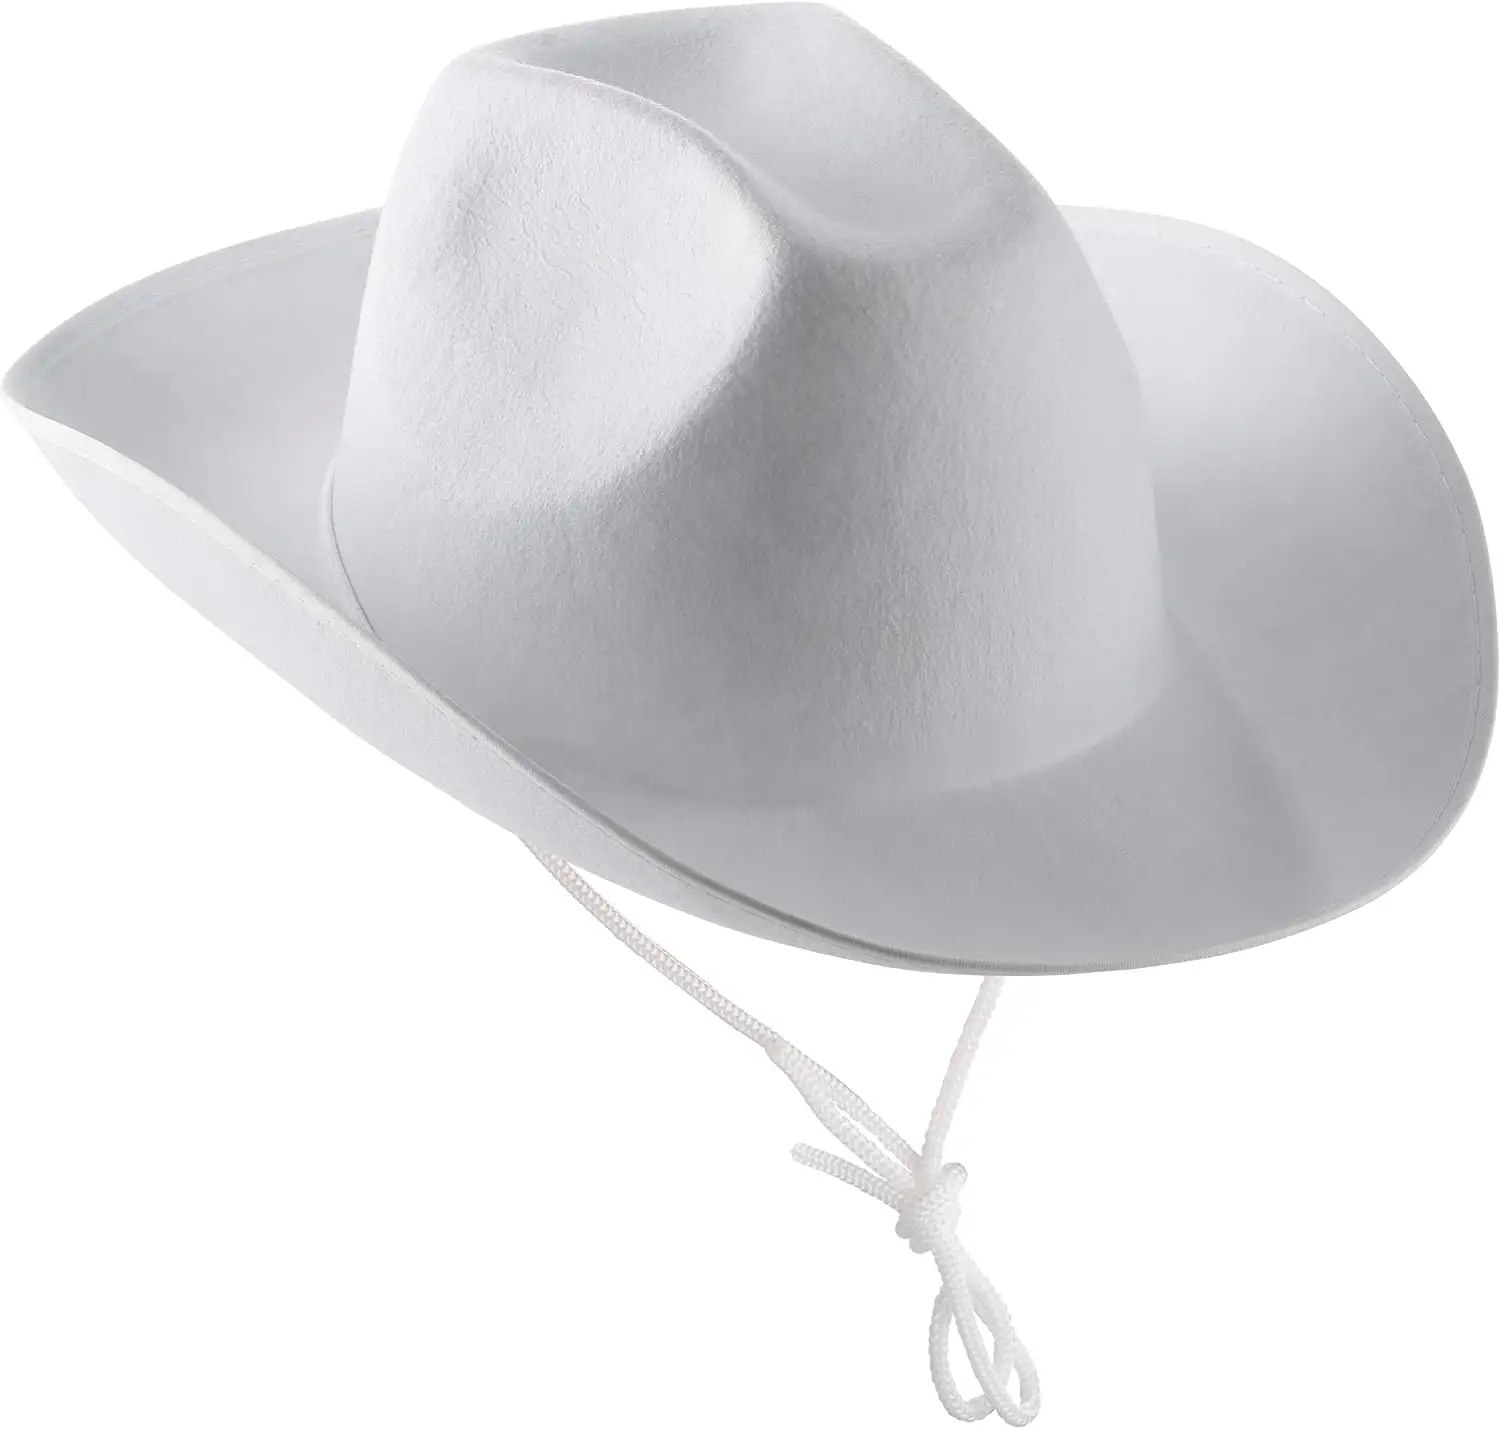 Cappello da Cowboy bianco cappello da Cowboy in feltro da donna e da uomo con collo regolabile disegnare la corda per vestire feste e costumi accessori